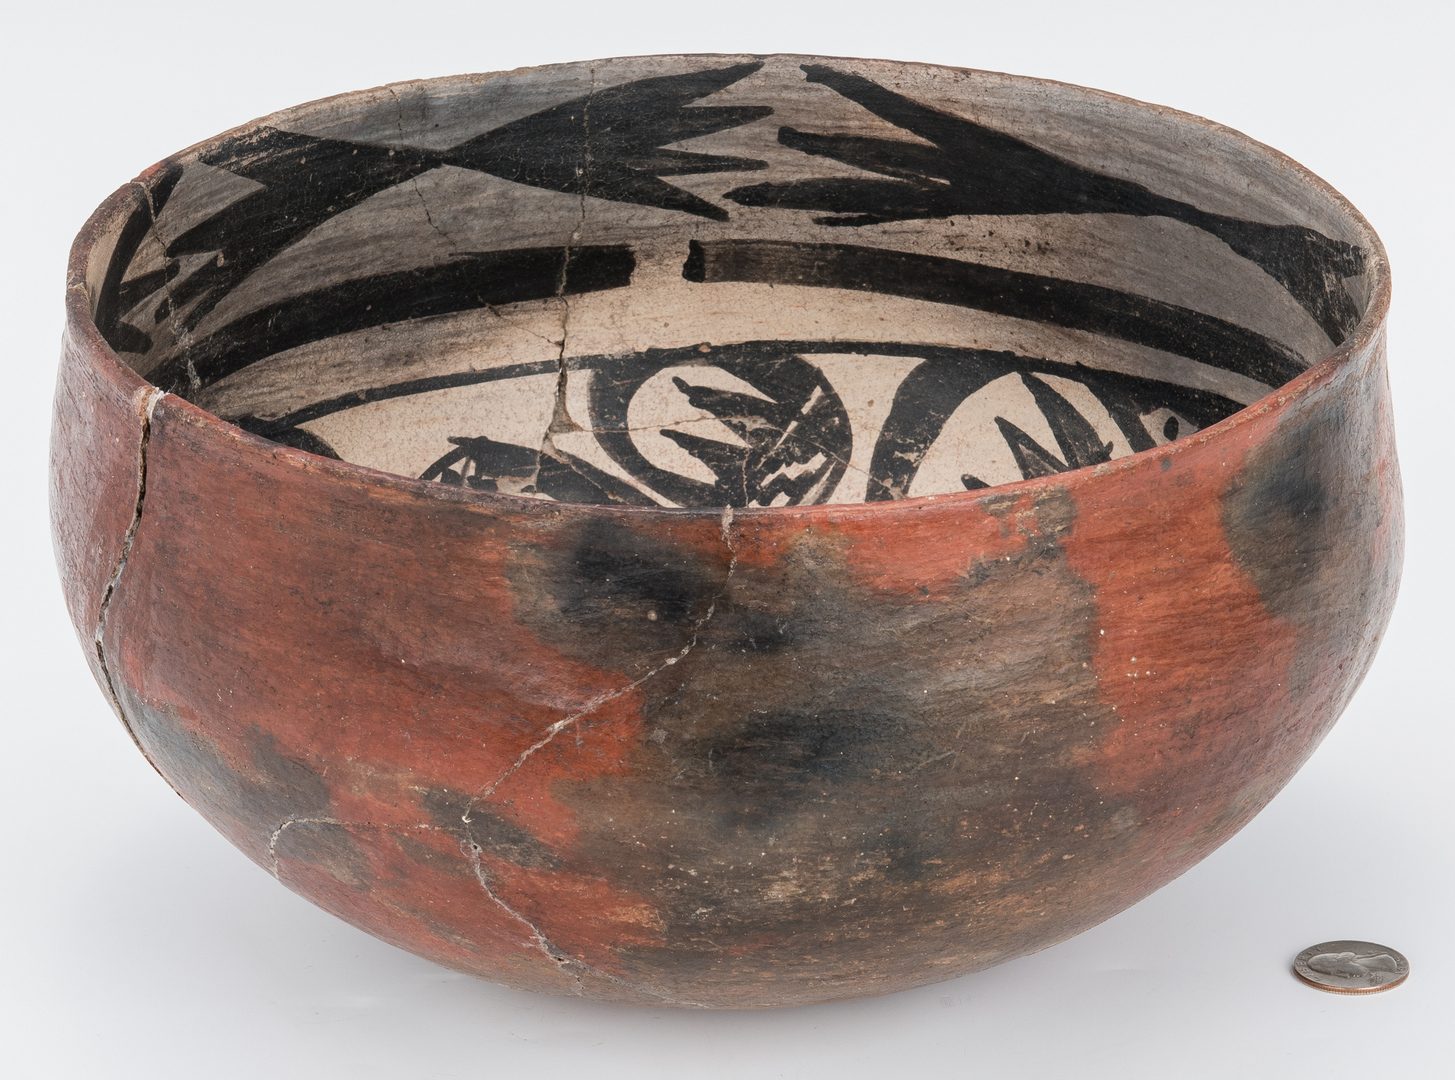 Lot 273: Native American Southwest Pueblo Pottery Bowl